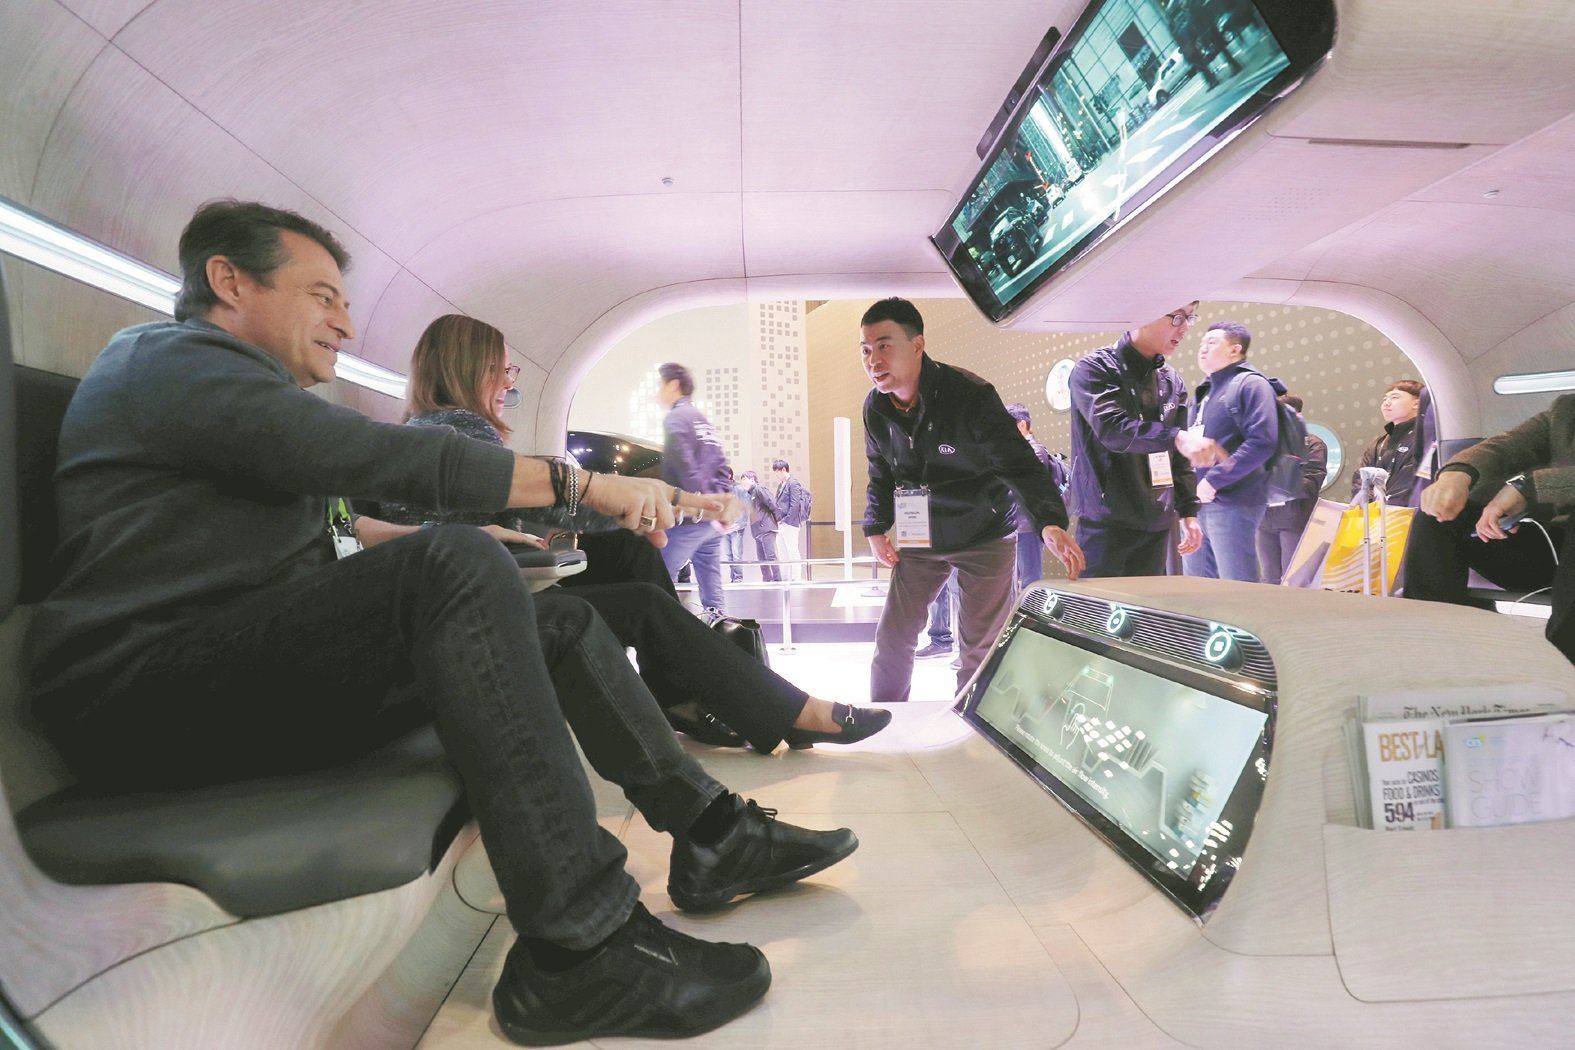 韩国起亚（Kia）自动驾驶系统也是参展项目之一，现场观众在一个模拟驾驶舱内，尝试用手势控制自动驾驶汽车模型中的功能。